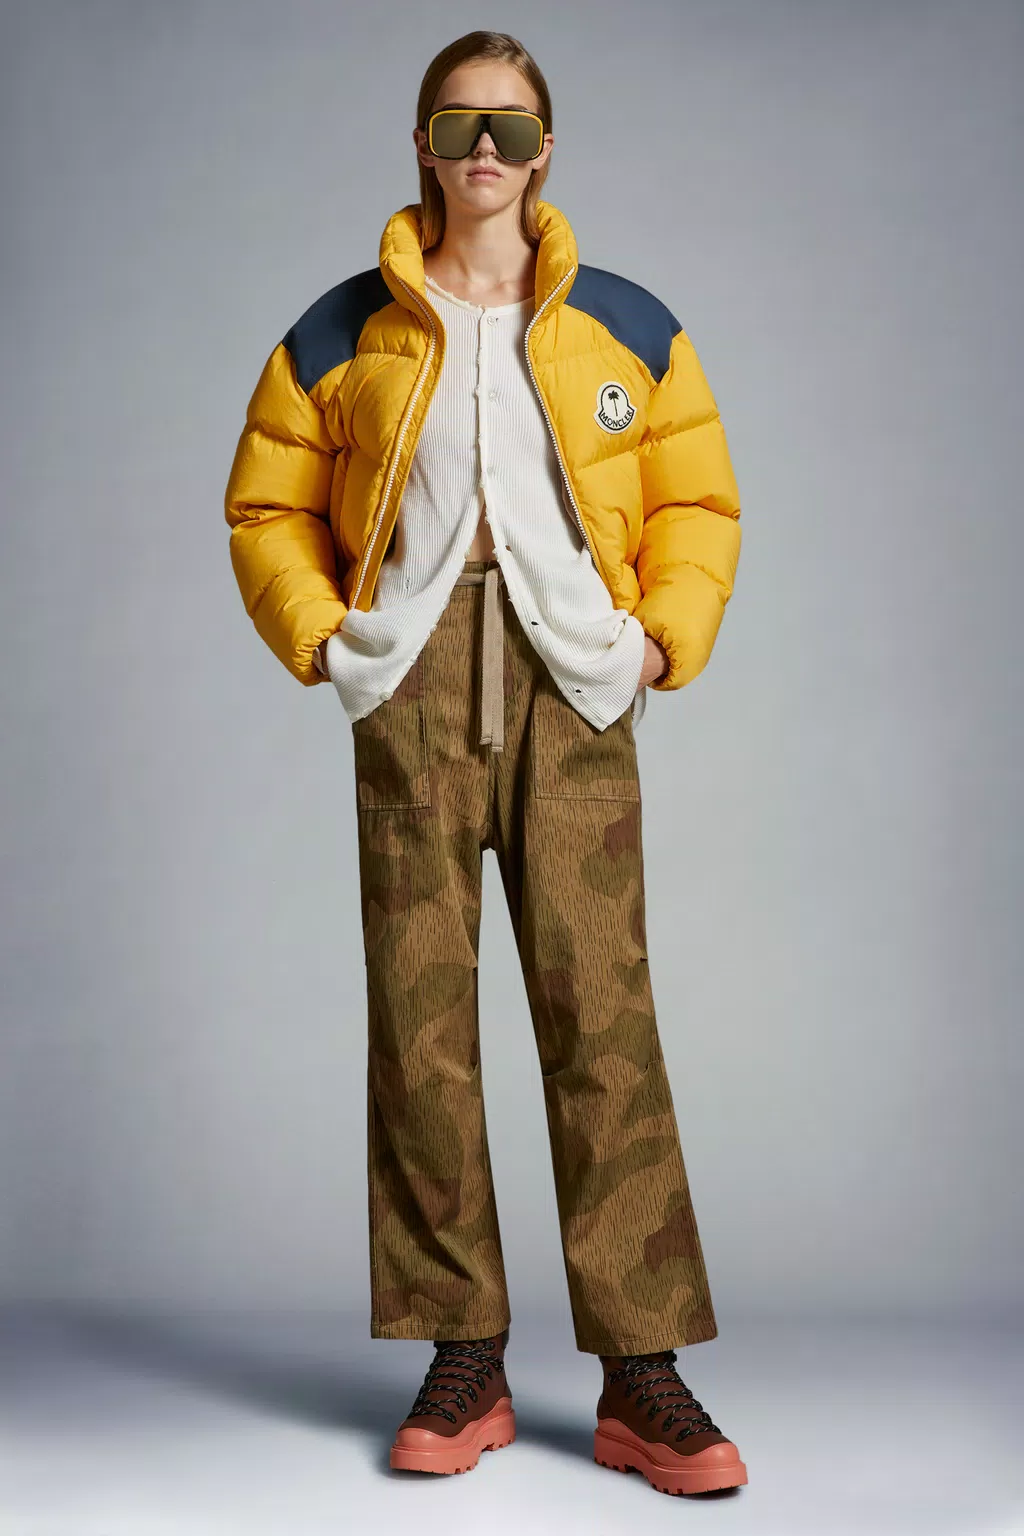 Palm Angels X Moncler Puffer Jacket – FabricsOfLeeds